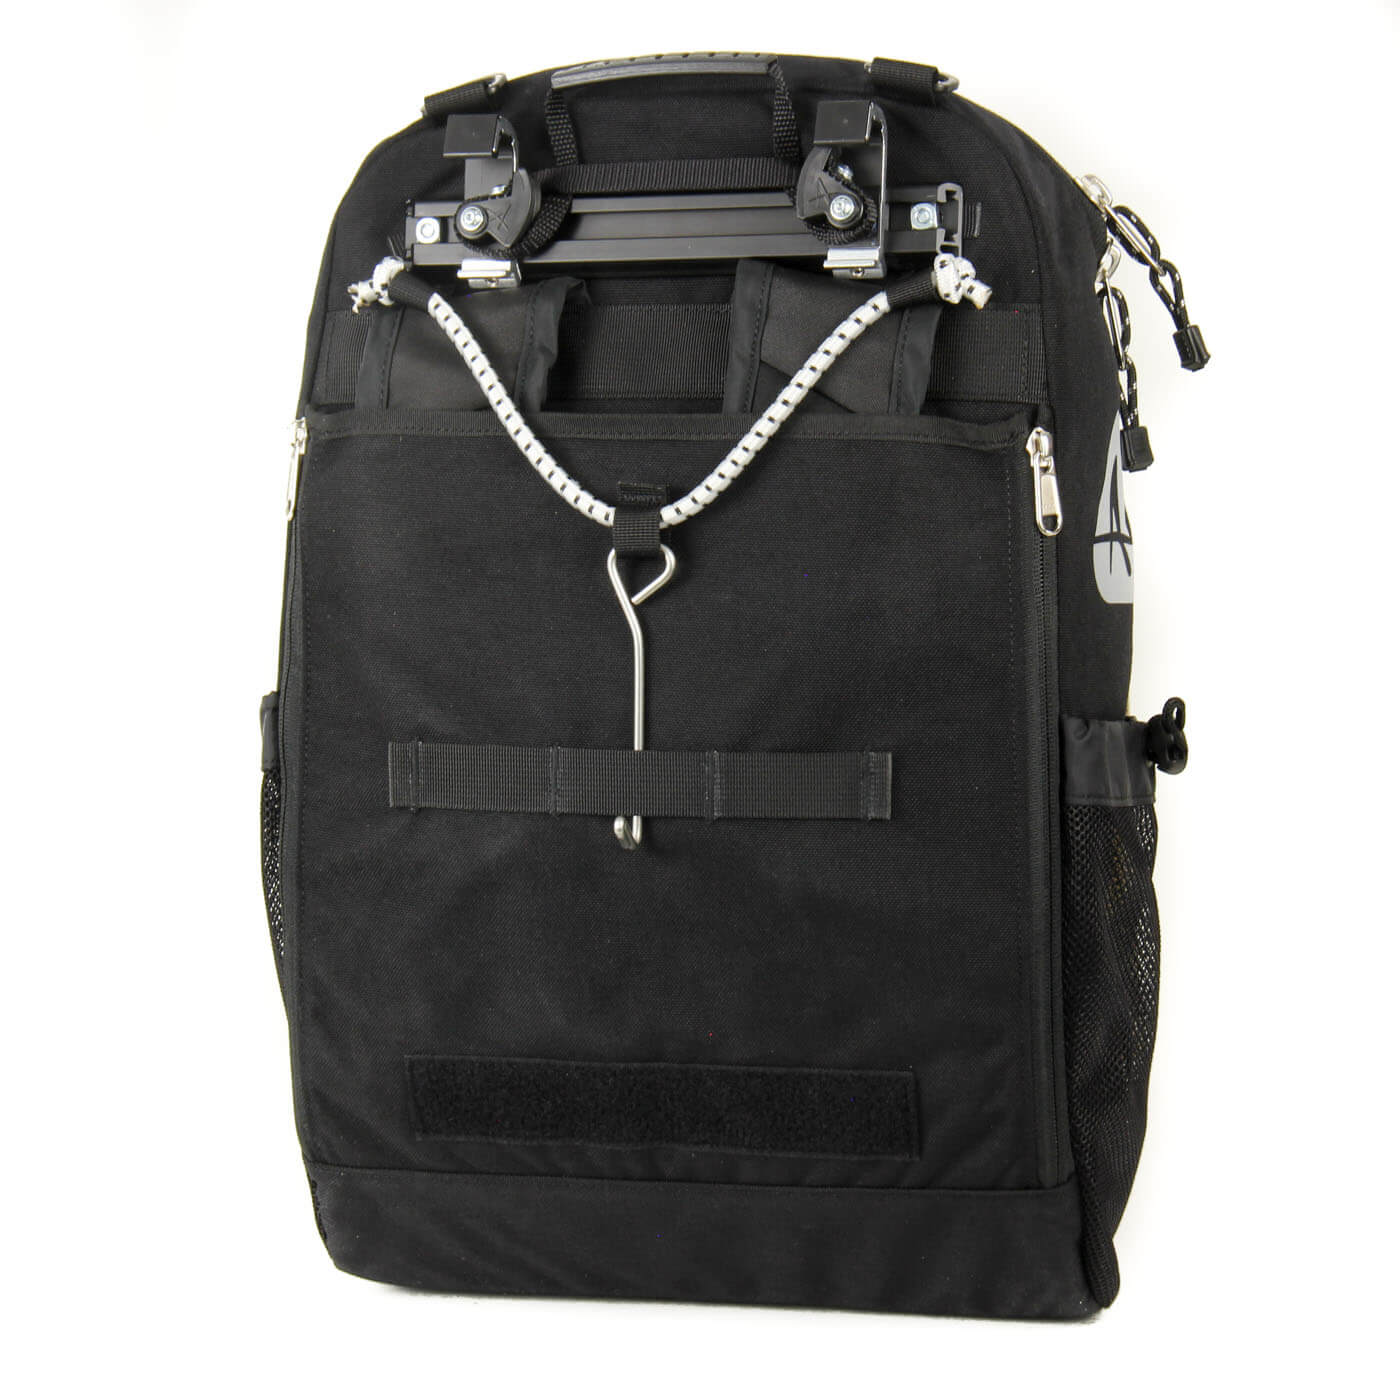 Bug Pannier Backpack - 25 L